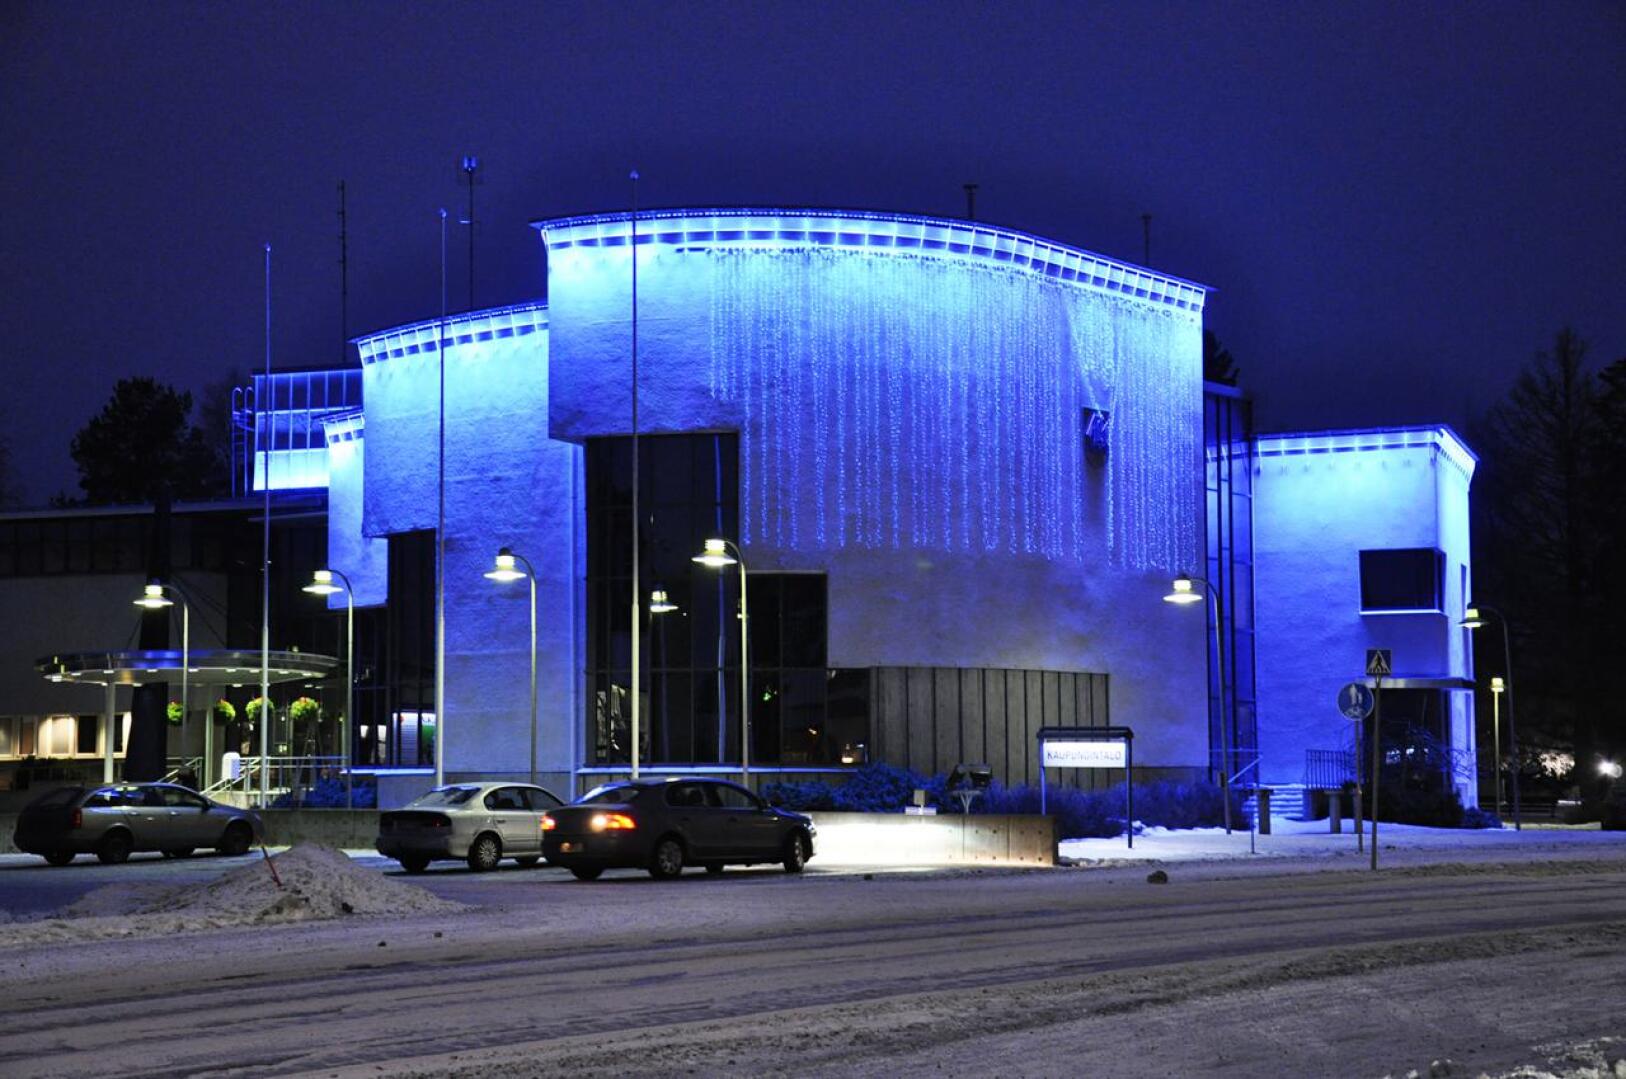 Kalajoen kaupunginhallitus esittää valtuustolle, että Kalajoen kaupunki ulkoistaa talous- ja henkilöstöhallinnon palvelut.